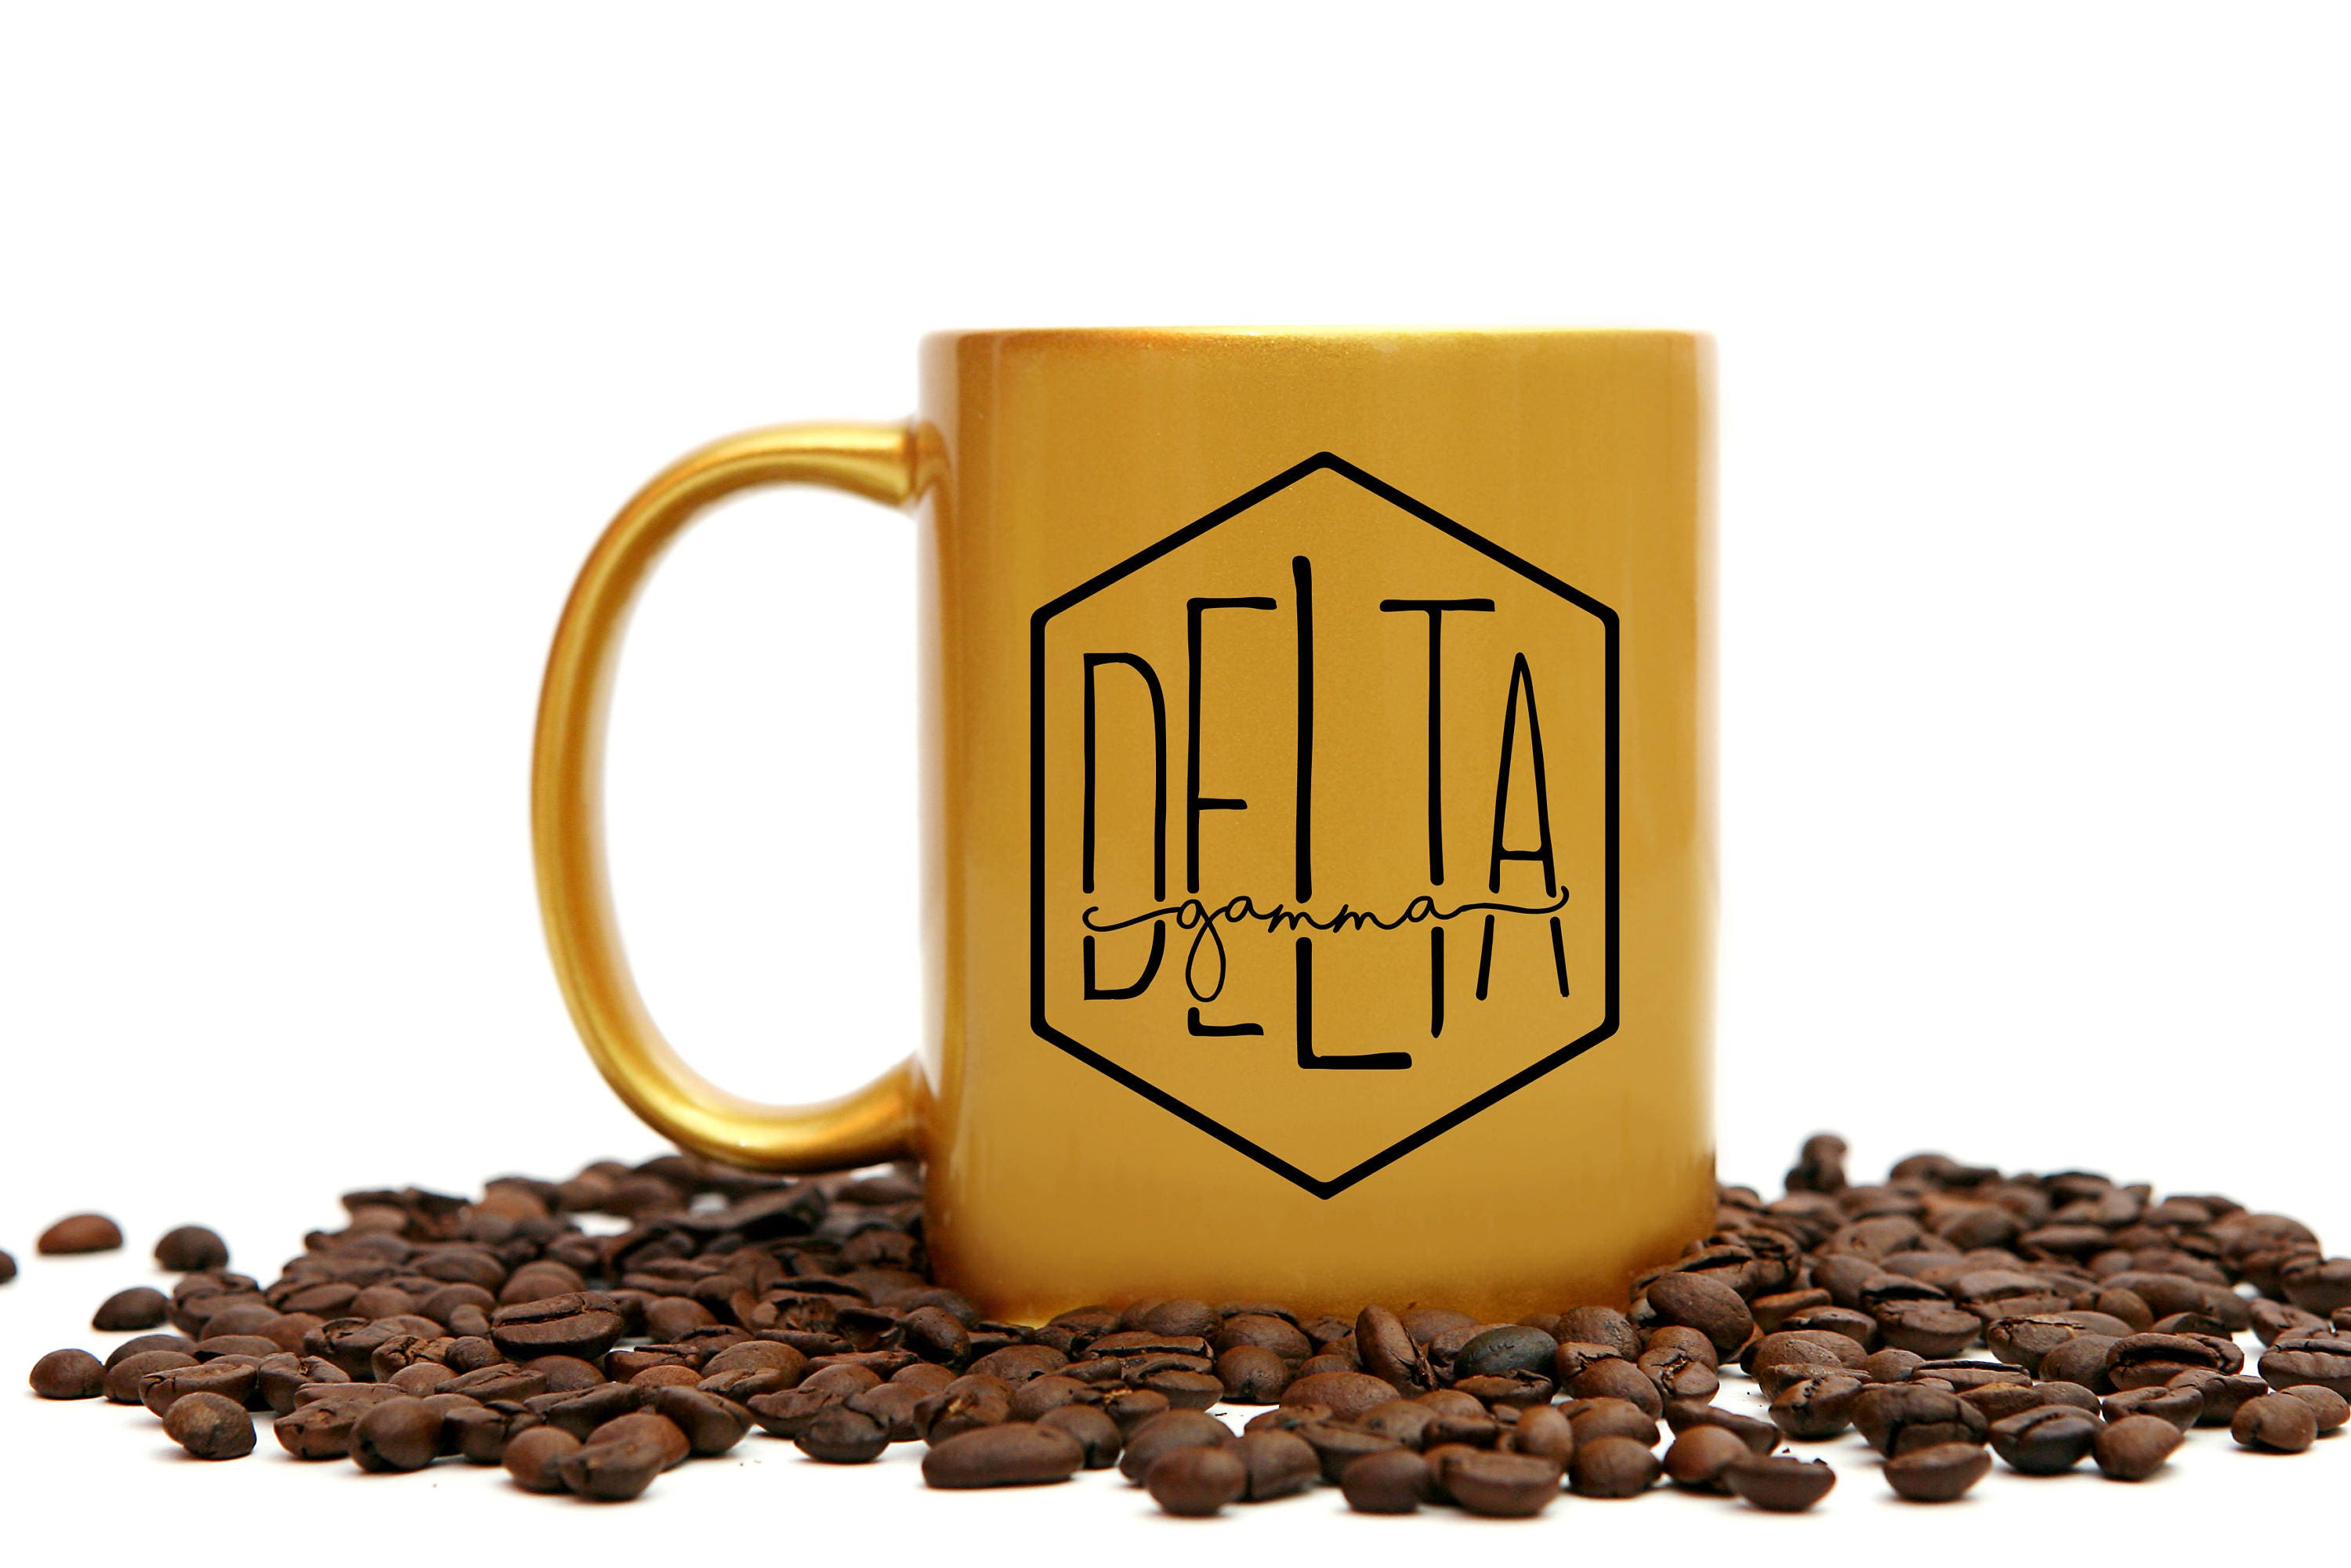 Delta Gamma Gold Coffee Mug - Go Greek Chic